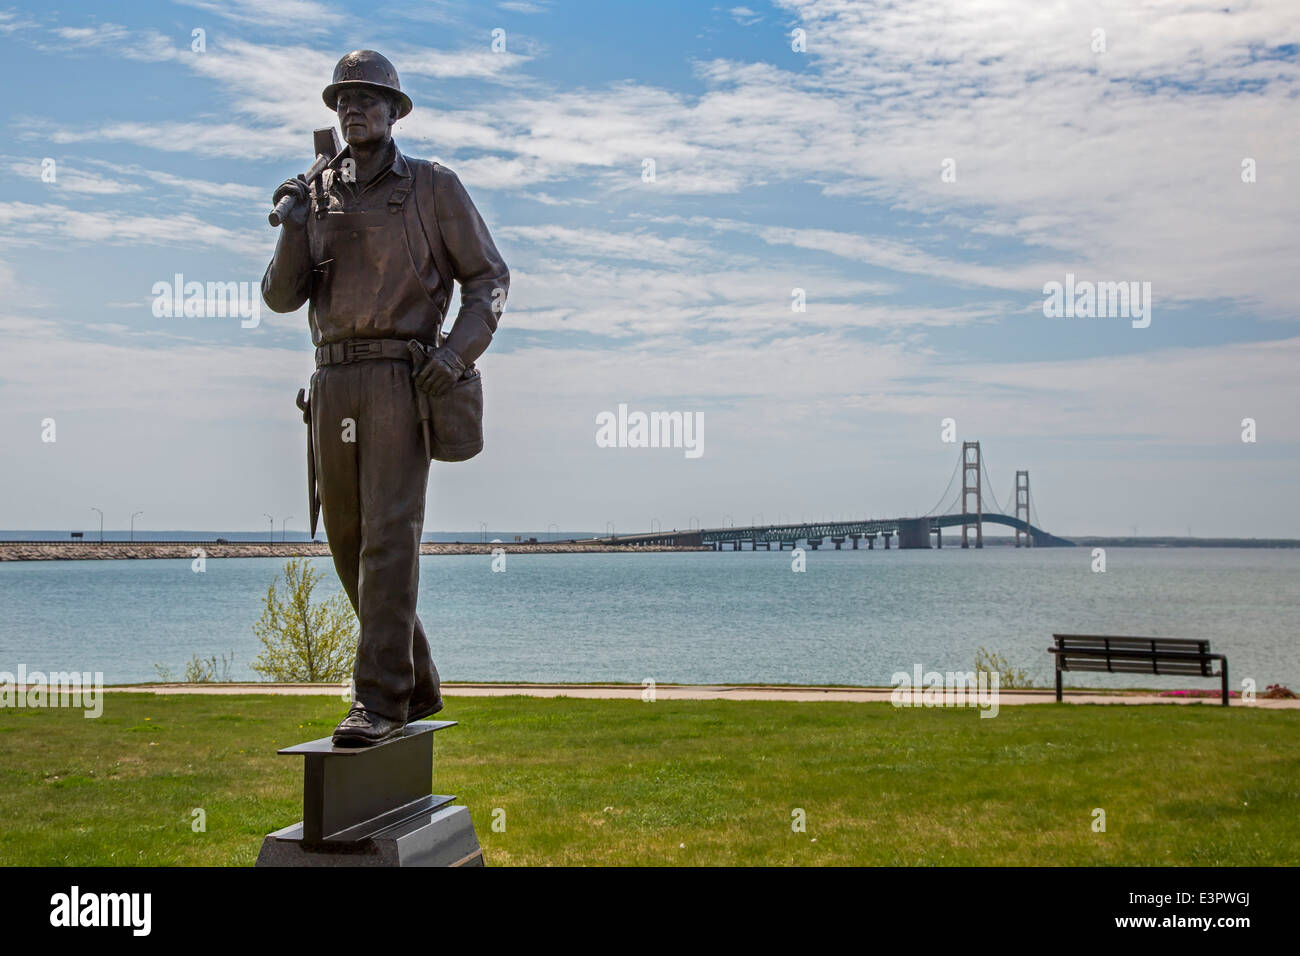 St. Ignace, Michigan - eine Statue eines Stahlarbeiters ist ein Denkmal für die fünf Arbeiter getötet in der Mackinac Brücke zu bauen. Stockfoto